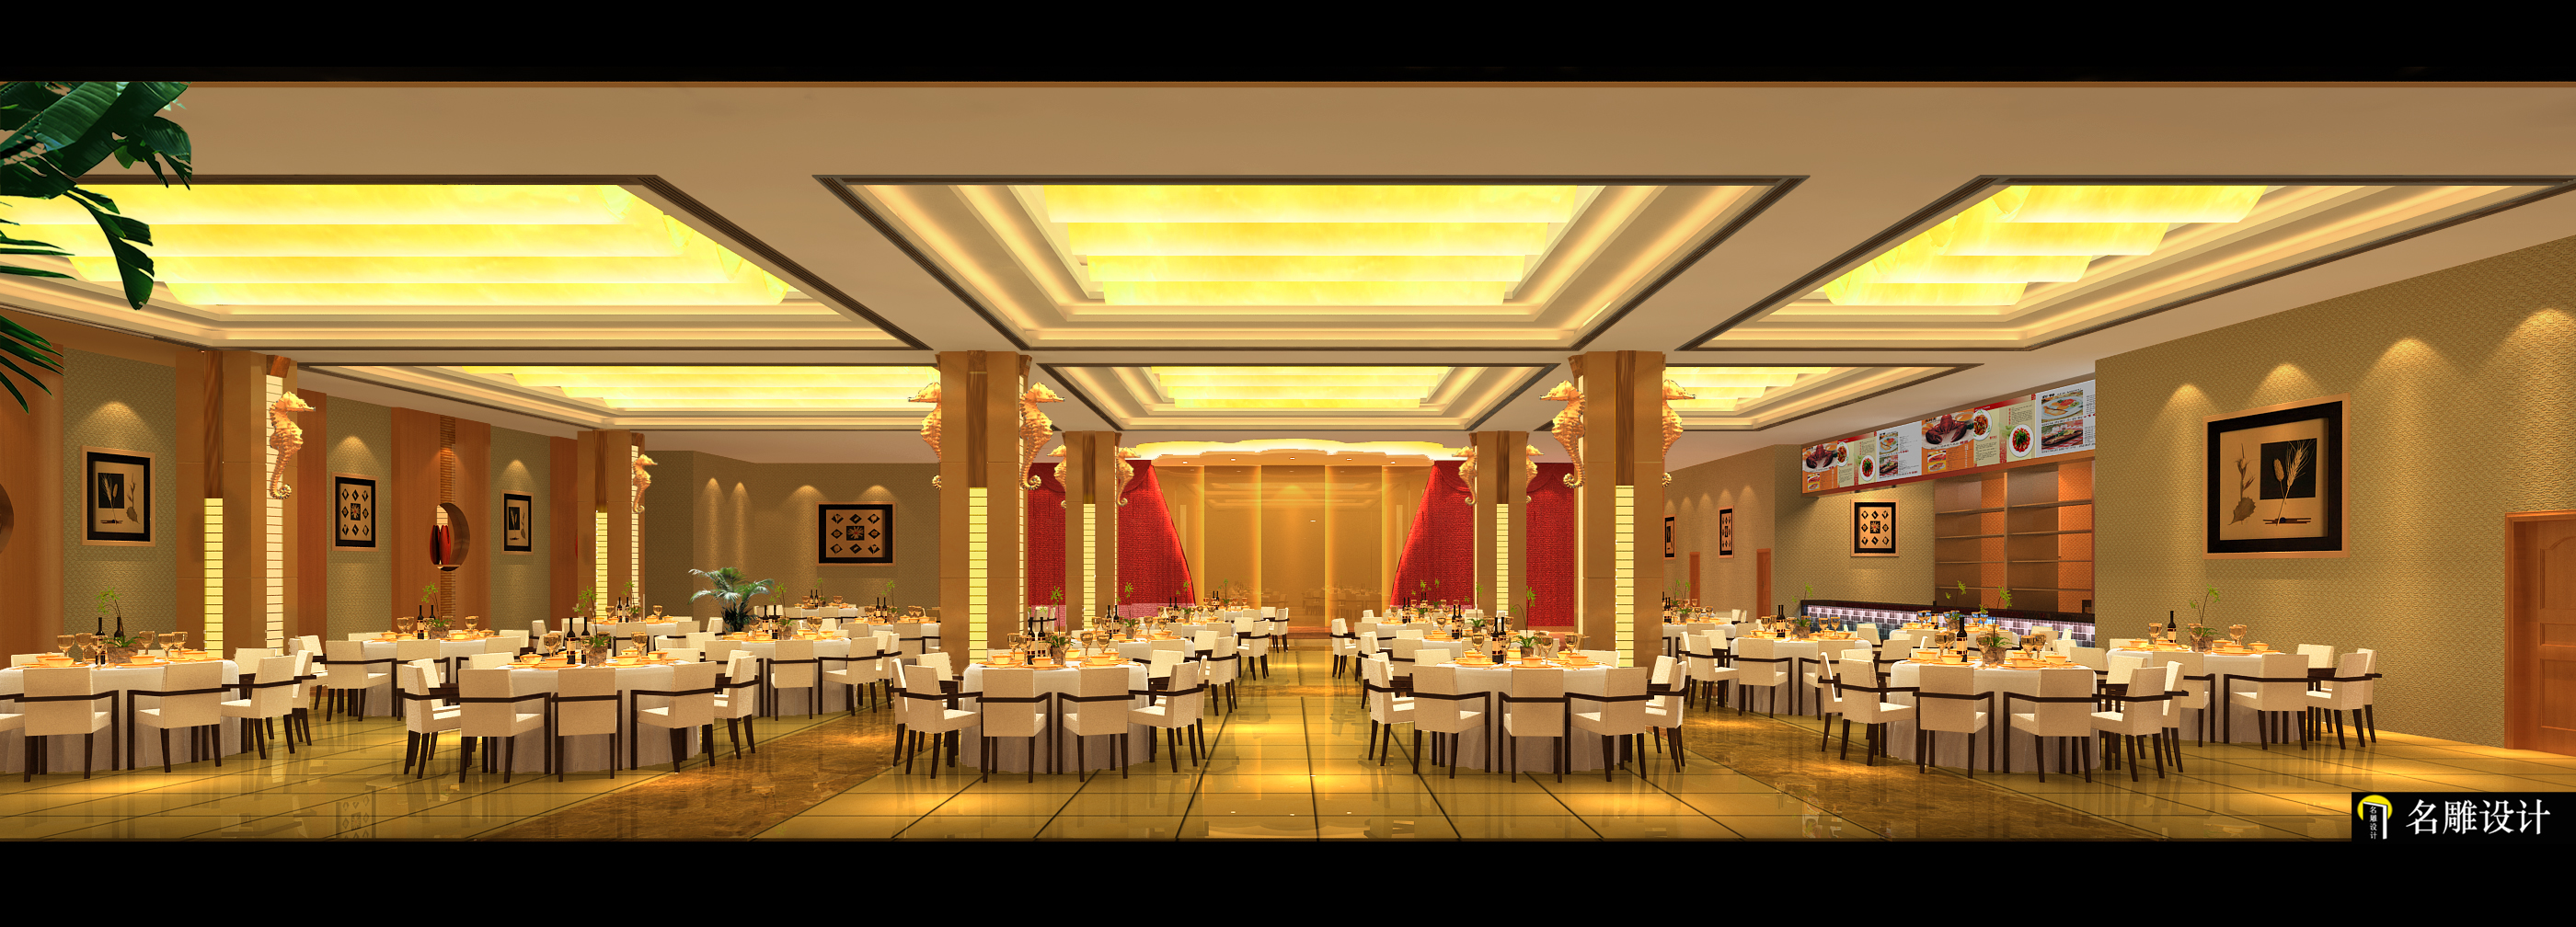 现代 酒楼装修 名雕装饰 餐饮空间 客厅图片来自名雕装饰设计在中山太王大酒楼豪华装饰的分享